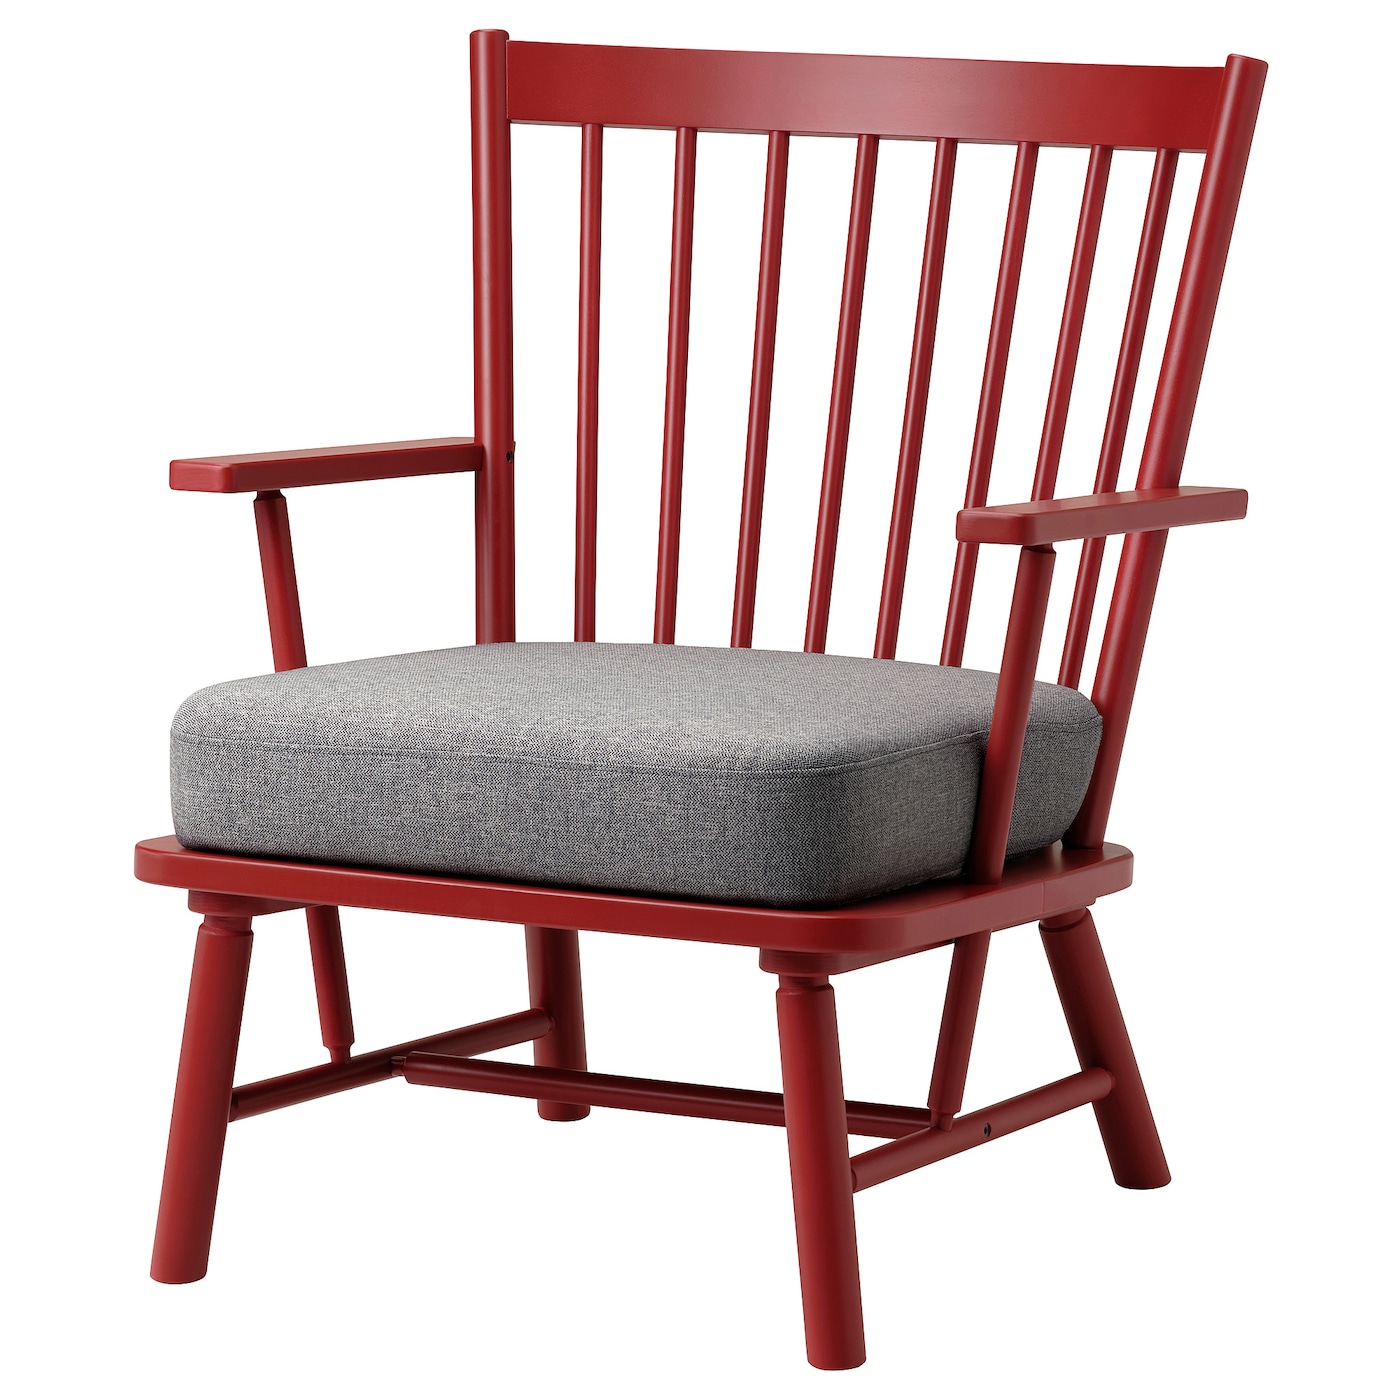 Кресло - IKEA PERSBOL, 69х70х84 см, коричнево-красный/серый, ПЕРСОБОЛ ИКЕА